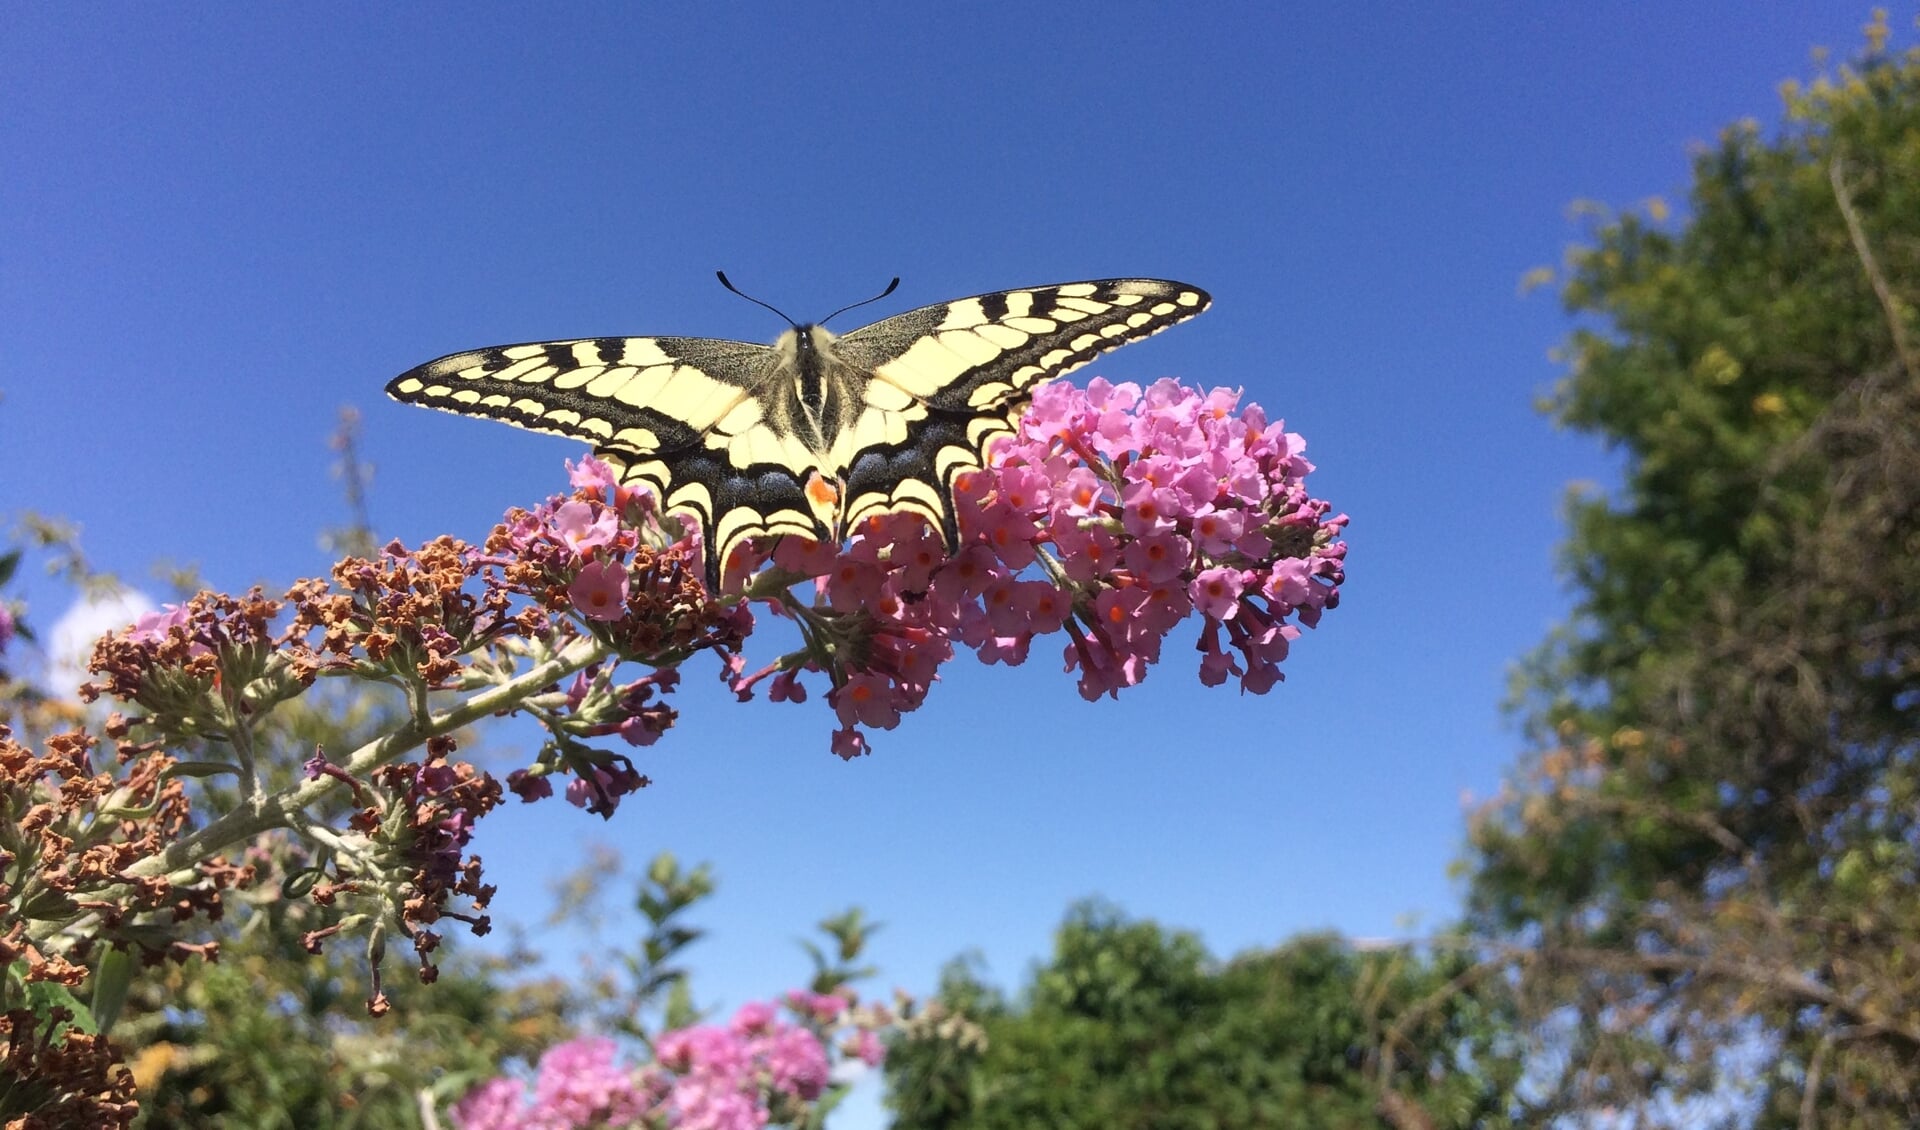 In vlindertuin De Hemelsleutel zijn dit jaar 29 koninginnenpages uitgevlogen. Foto: PR